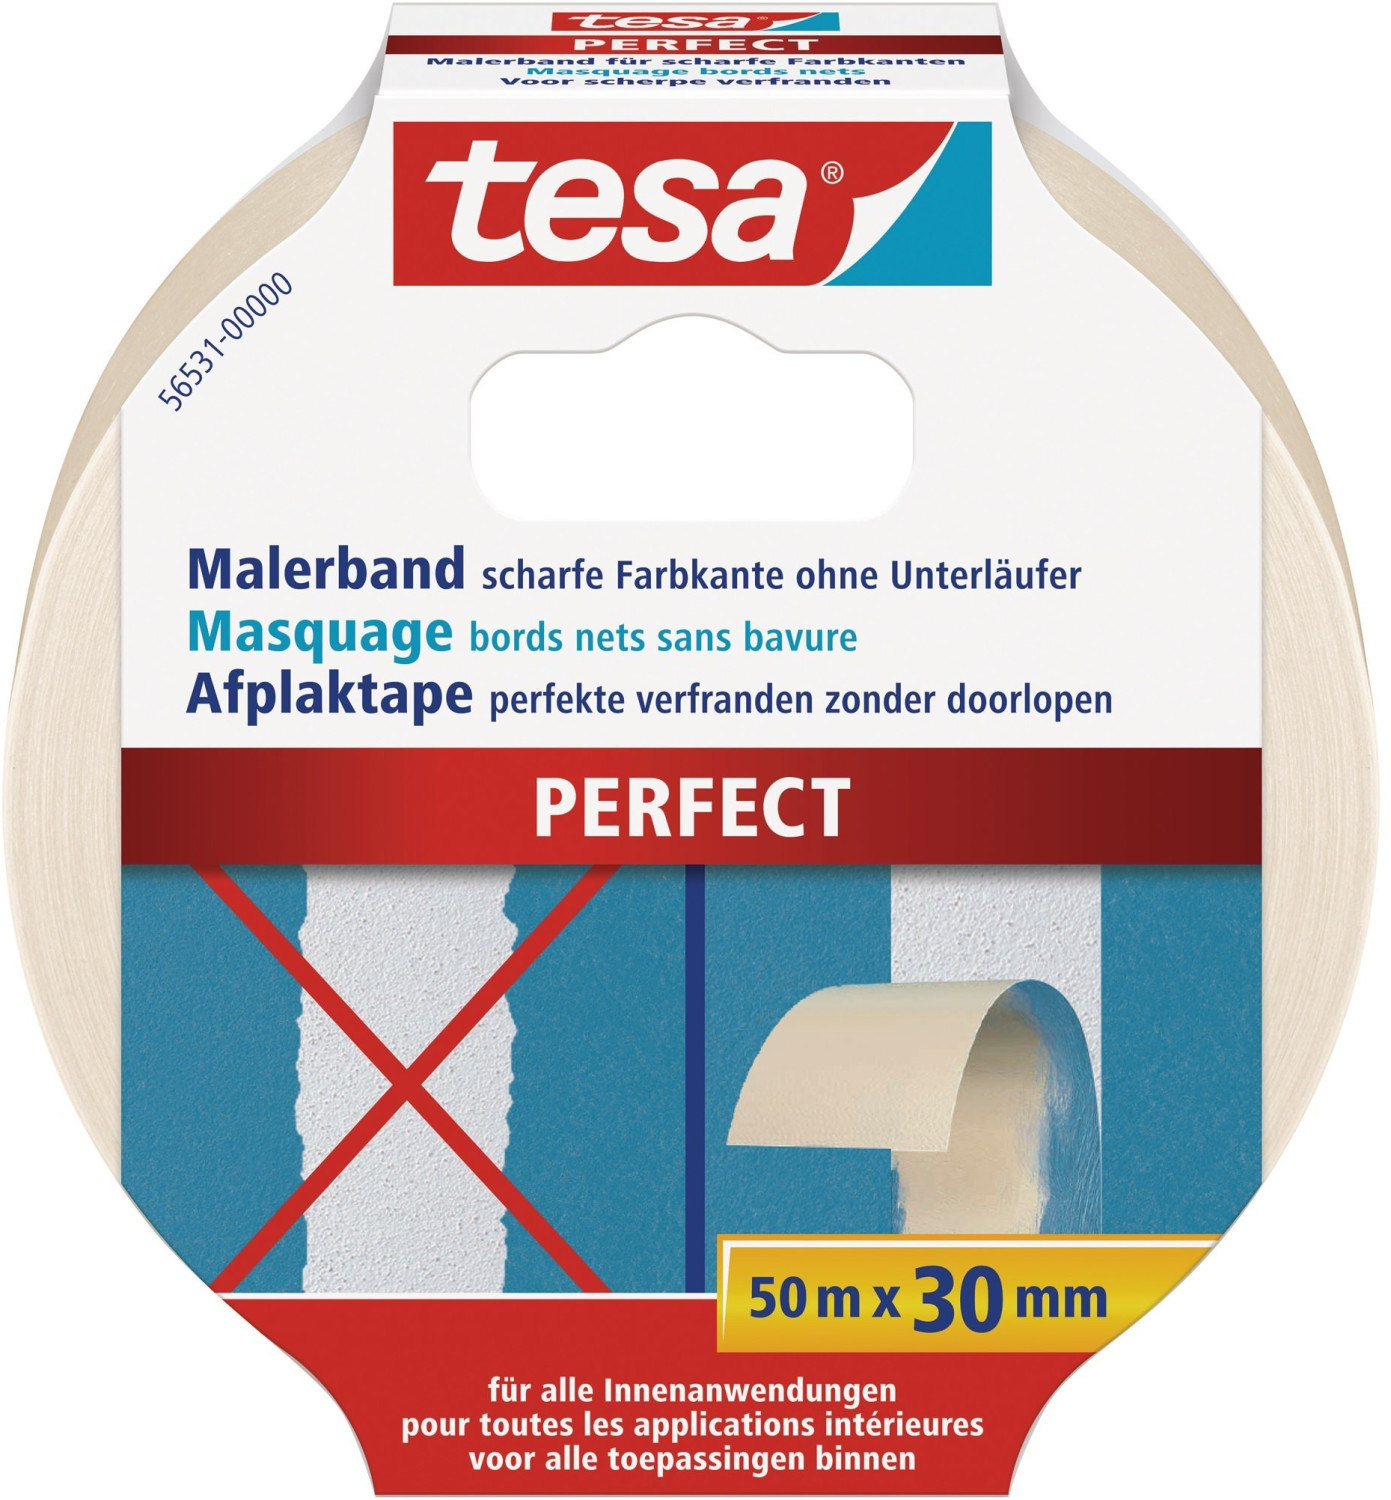 tesa Malerband Perfect 50m x 30mm ab 5,49 €